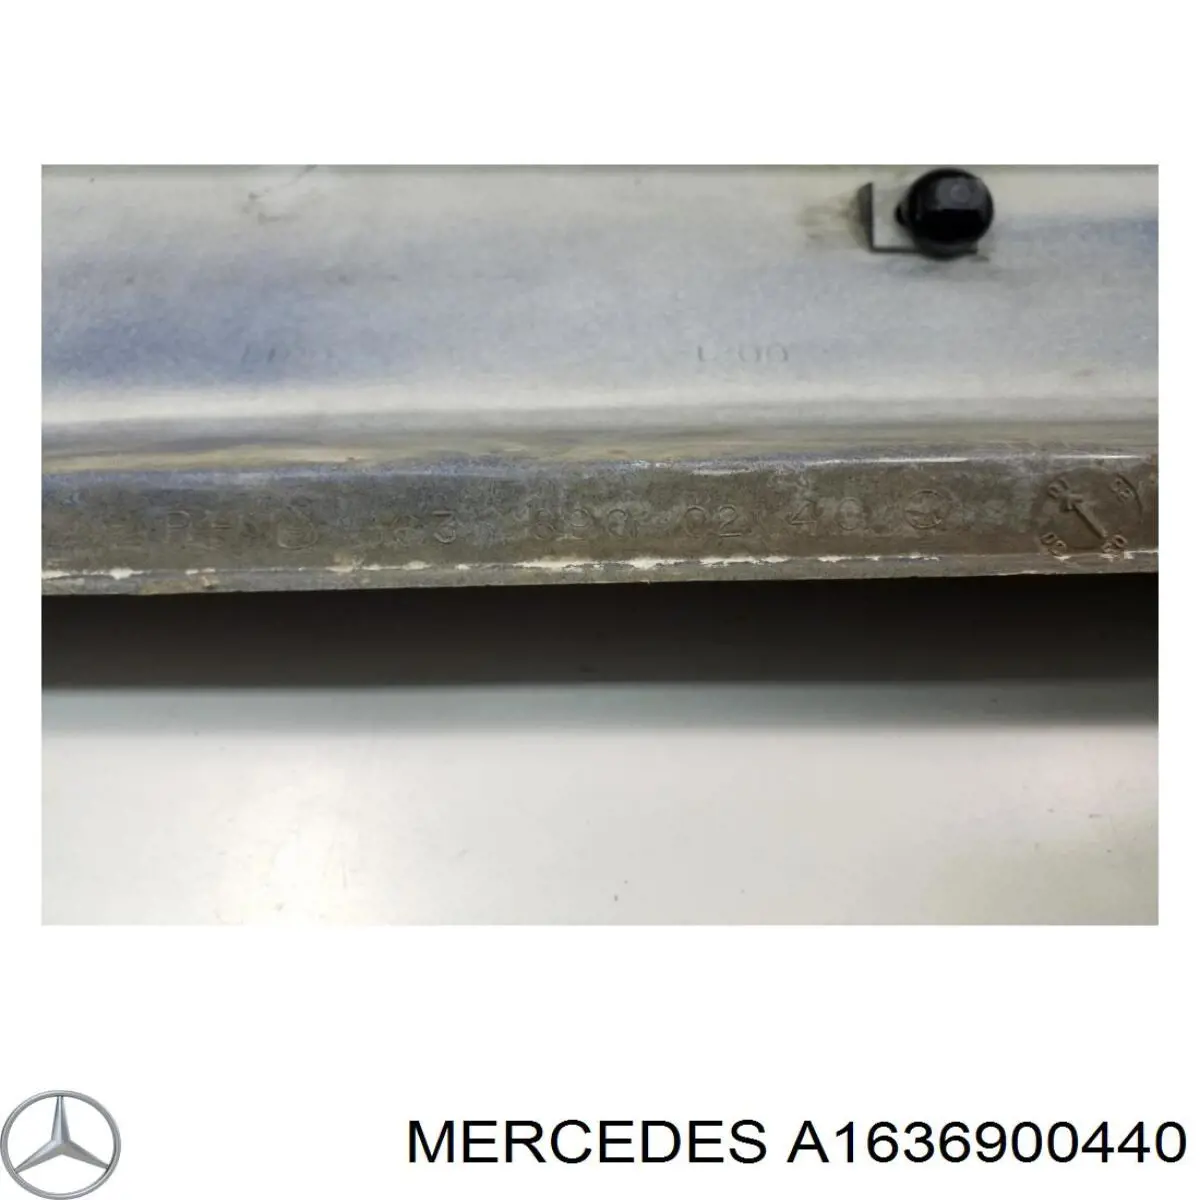 Moldura de umbral exterior derecha para Mercedes ML/GLE (W163)